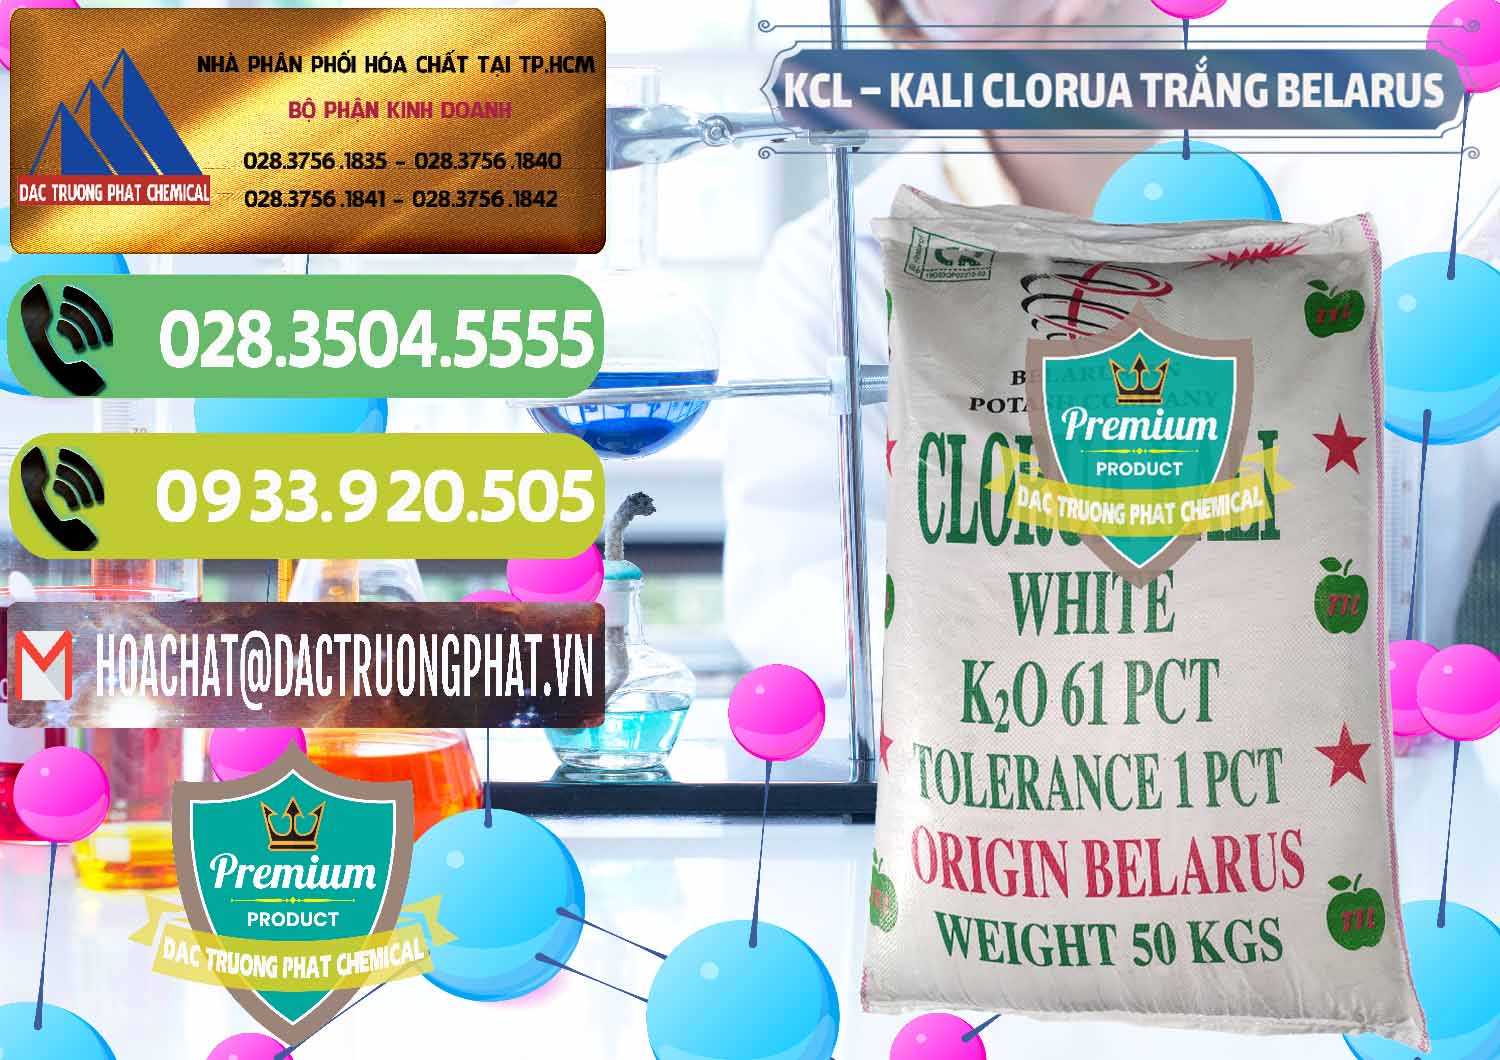 Nơi kinh doanh và bán KCL – Kali Clorua Trắng Belarus - 0085 - Đơn vị kinh doanh ( cung cấp ) hóa chất tại TP.HCM - hoachatmientay.vn